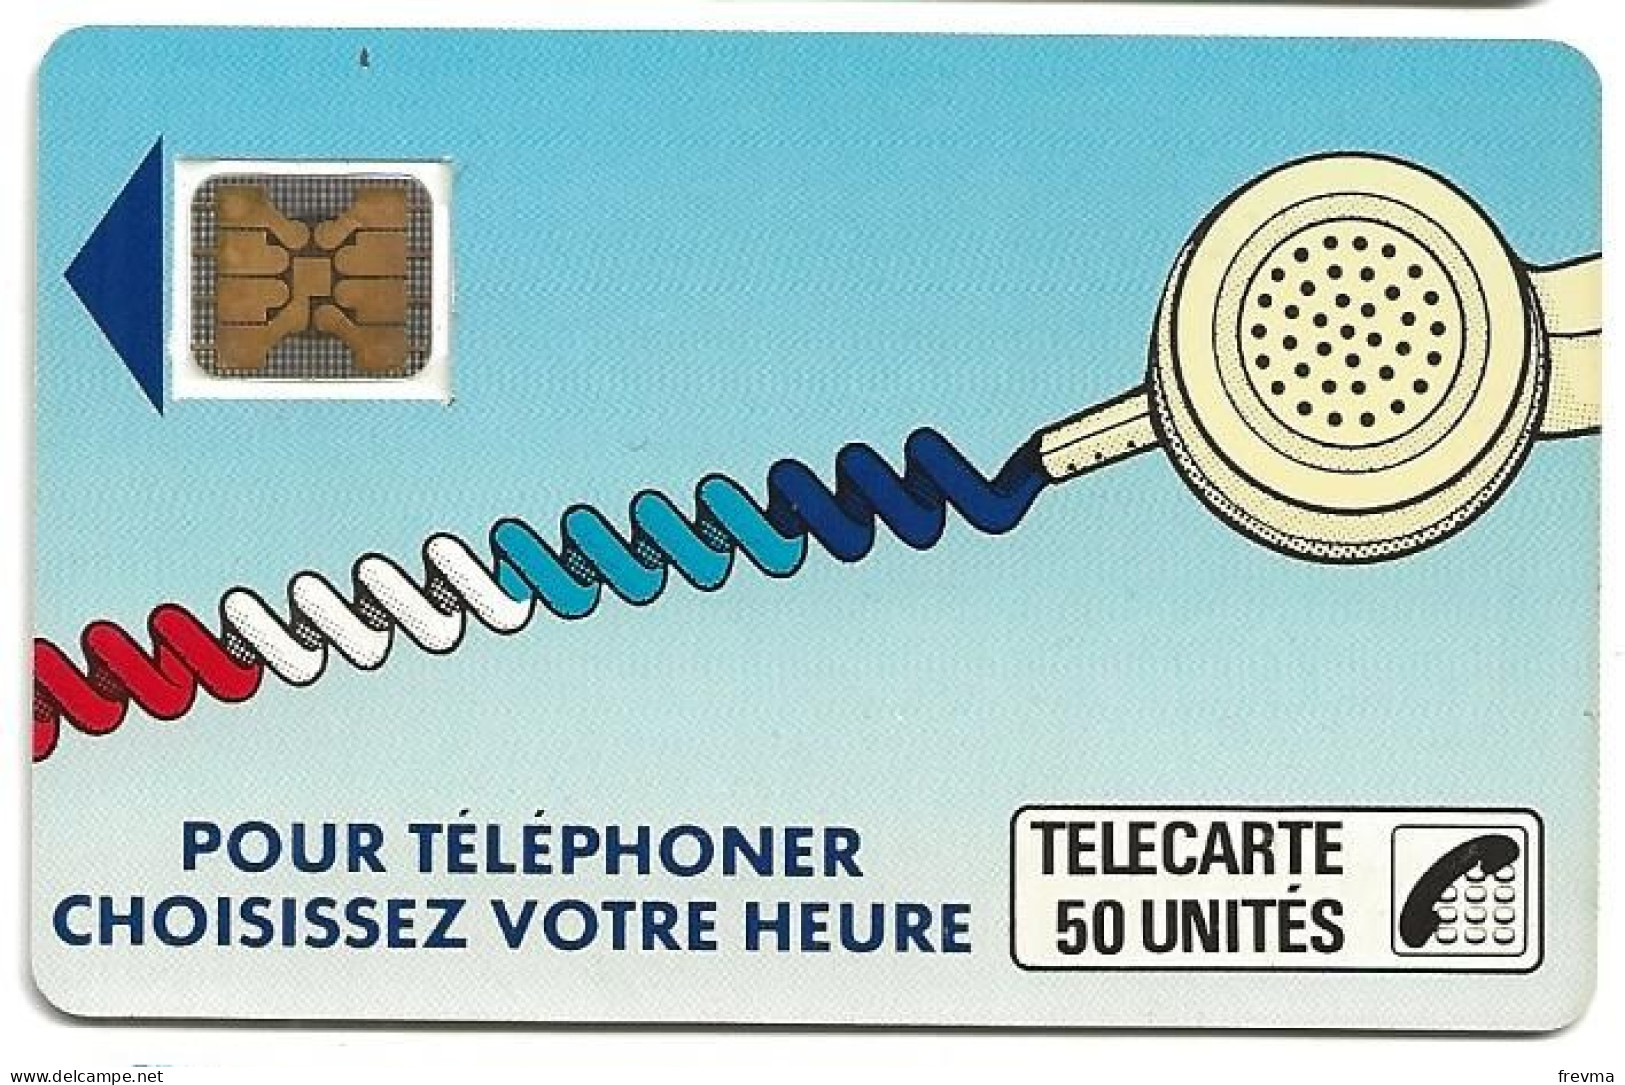 Telecarte K 9B 50 Unités SC4 On - Telefonschnur (Cordon)